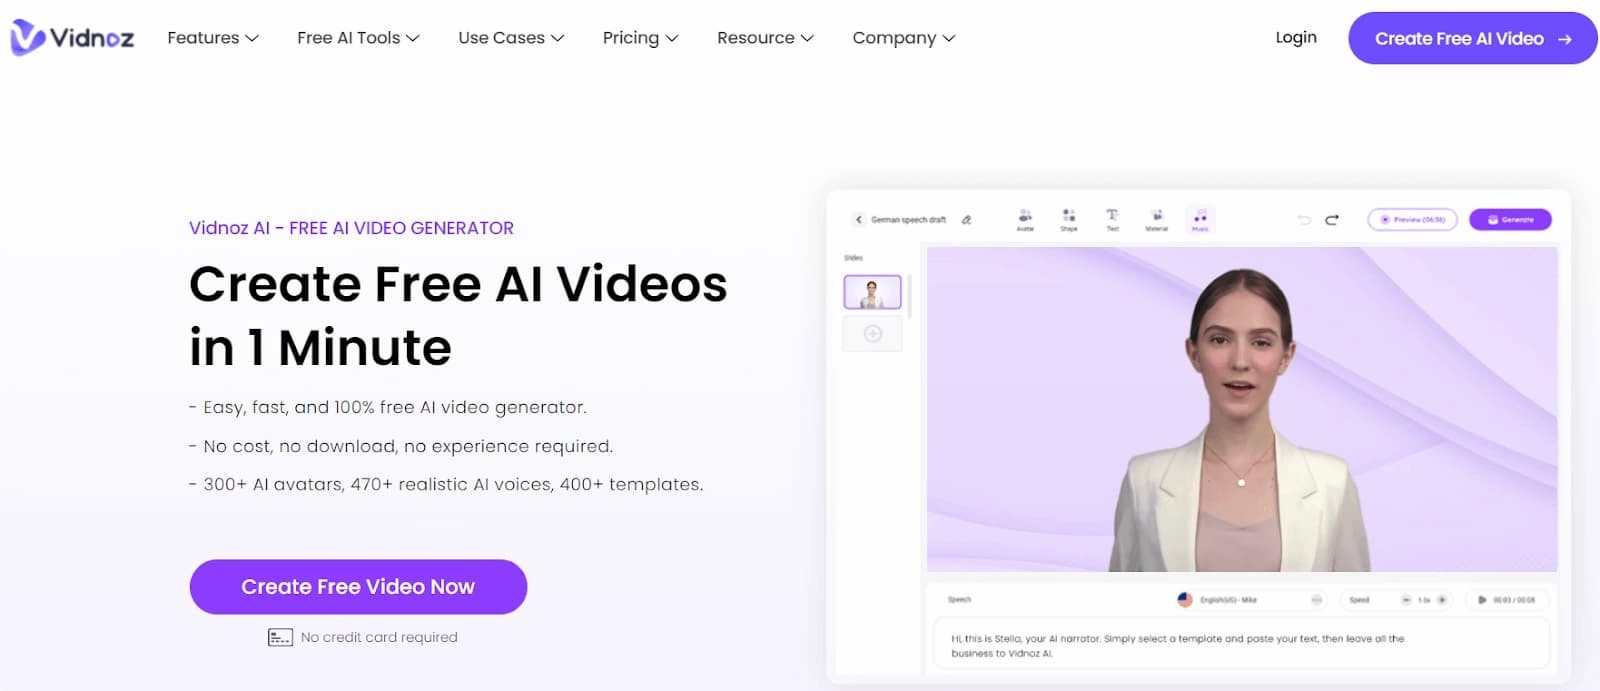 Vidnoz AI modifica il video di laurea con facilità grazie alle avanzate funzionalità dell'AI